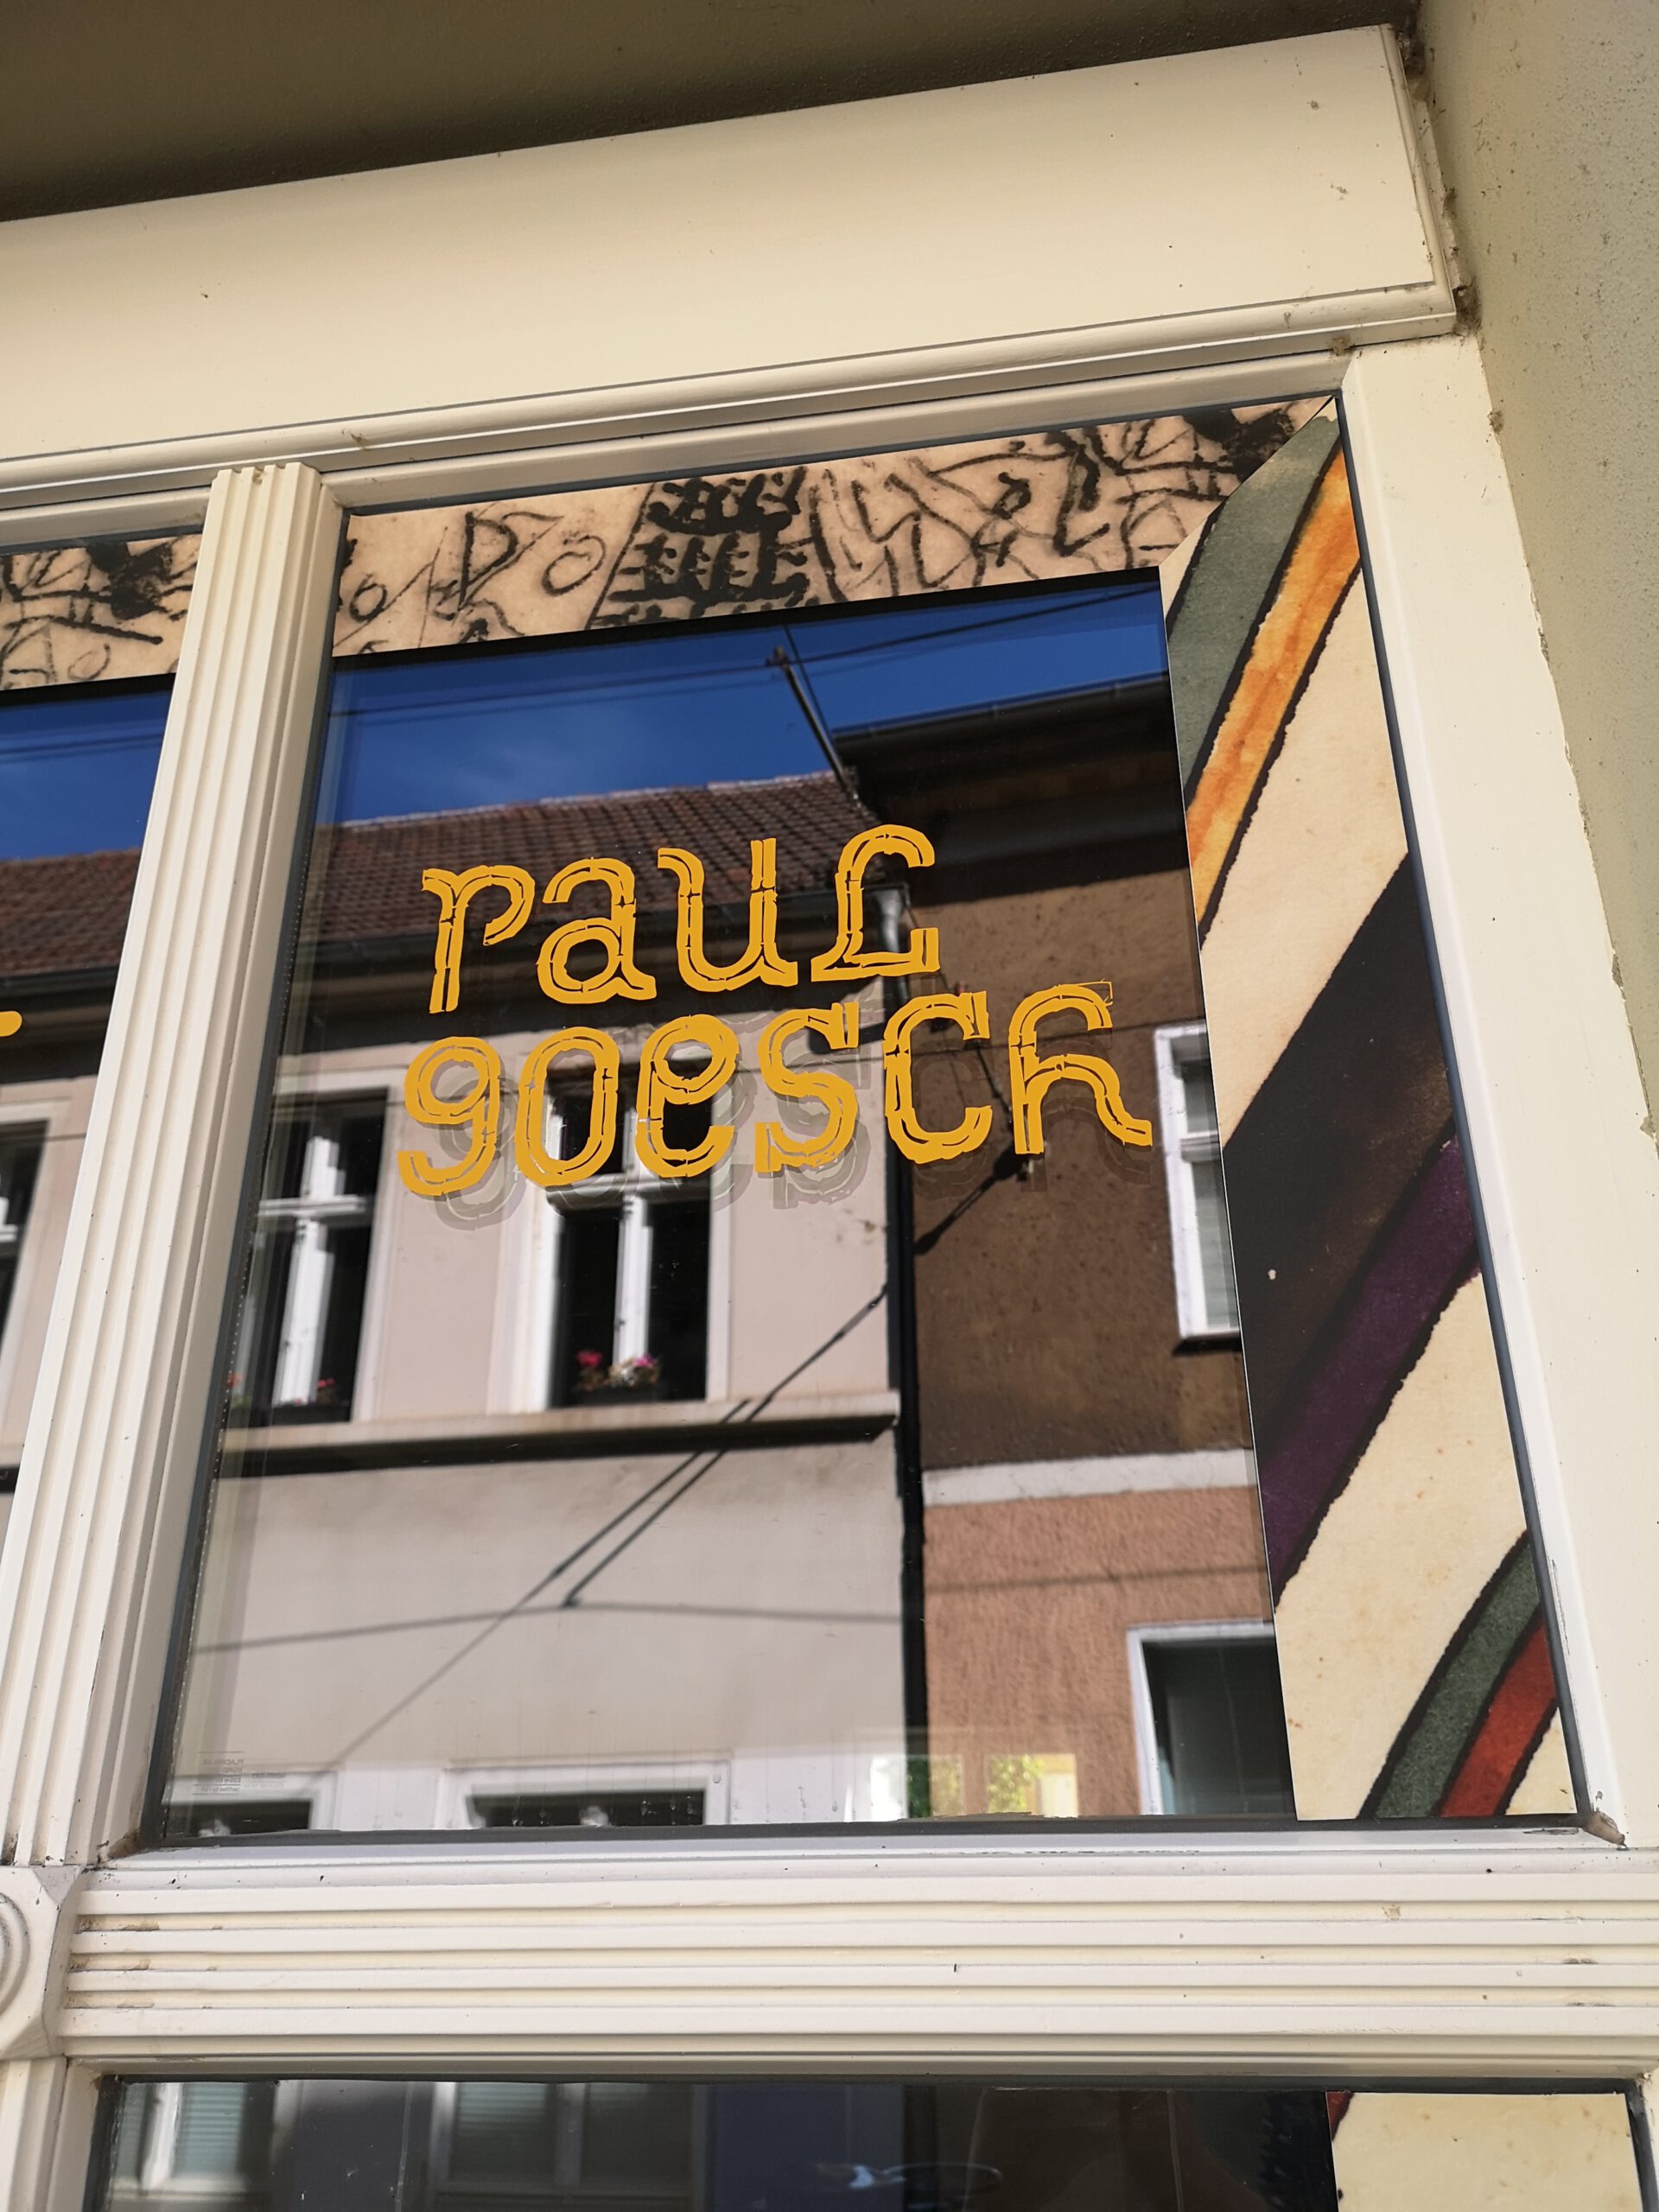 Ausschnitt eines alten Fensters. Auf die Scheibe ist umlaufend ein Rahmen aus Bildelement aus Goeschs Werken aufgeklebt. In der Mitte steht in gelber, verschnörkelter Schrift: "Paul Goesch"